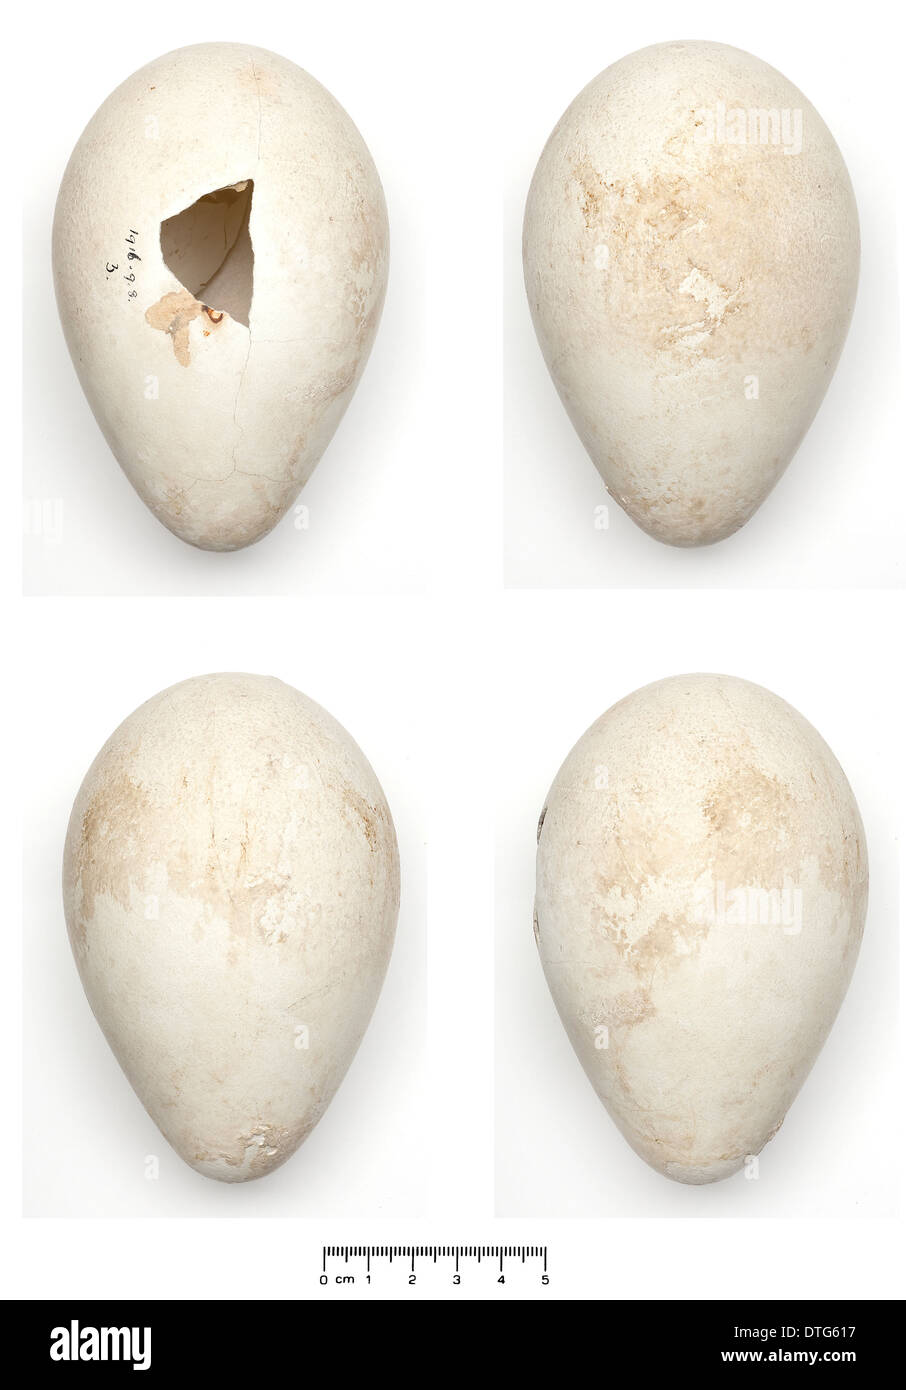 Aptenodytes forsteri, manchot empereur egg Banque D'Images